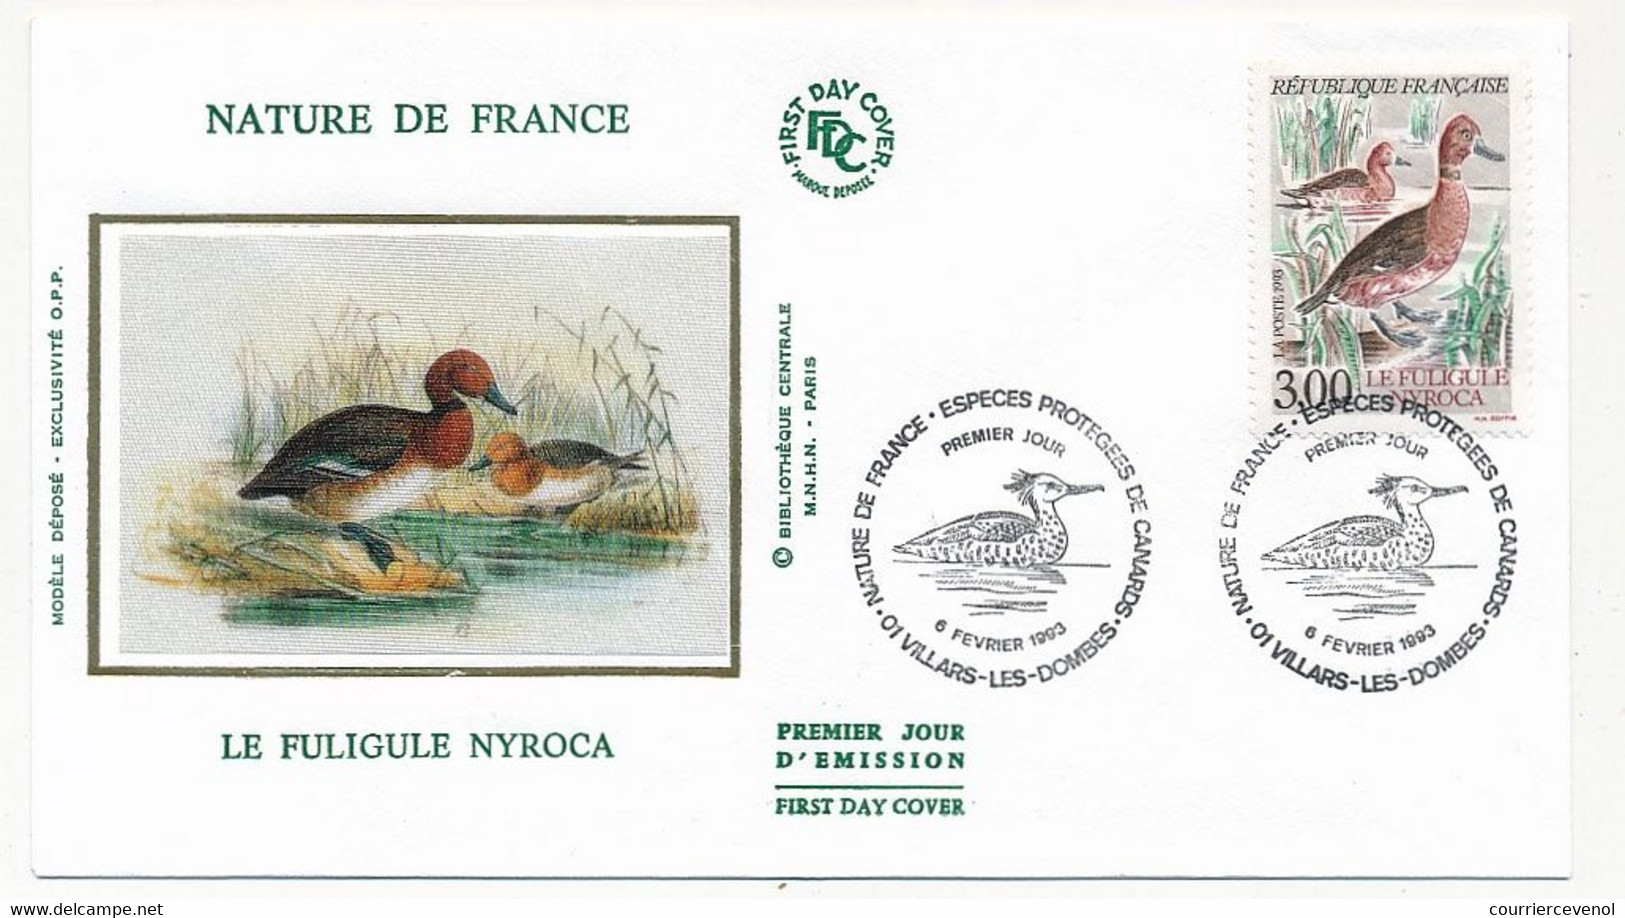 FRANCE - 4 Enveloppes FDC Soie - Nature De France - Espèces Protégées De Canards - 01 Villars-les-dombes 6 Fev 1993 - 1990-1999